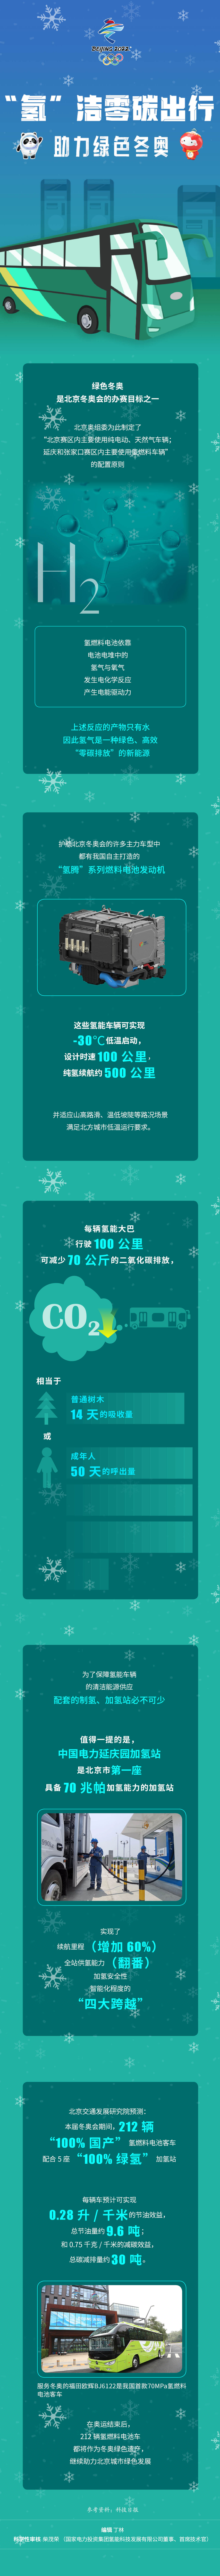 绿色冬奥,氢燃料车辆,零碳出行助力绿色冬奥